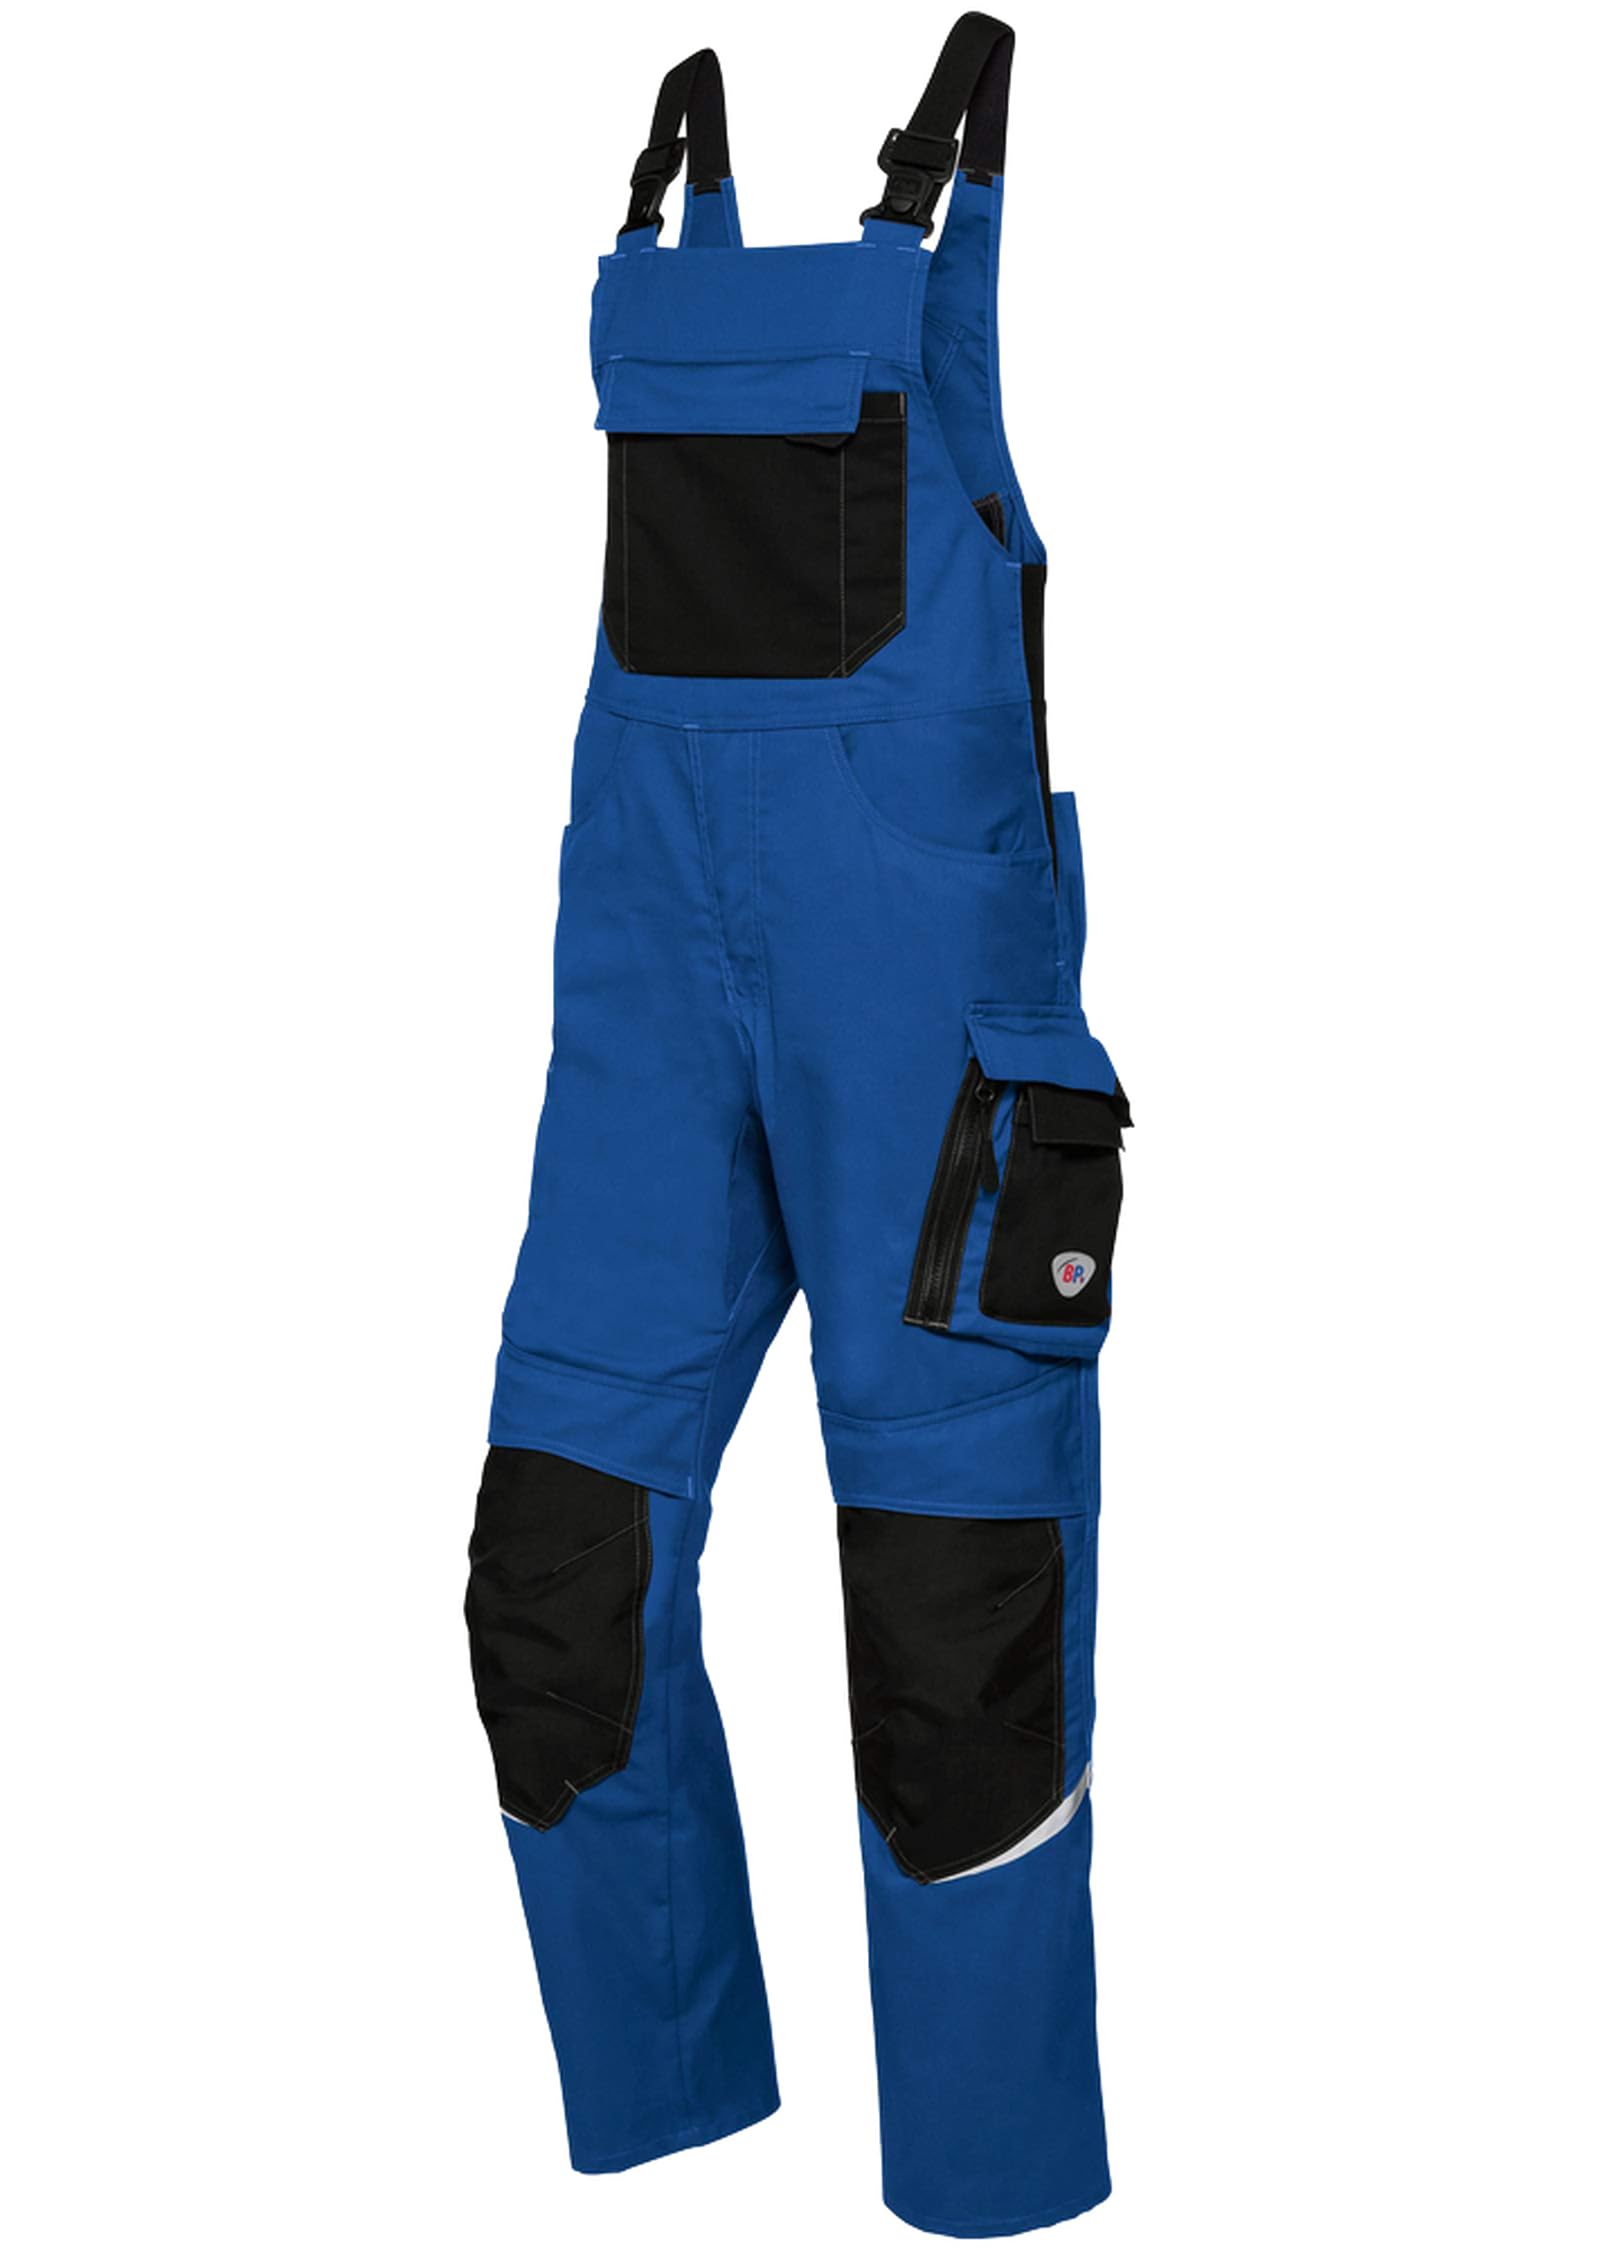 BP 1979-570-1332 Latzhose mit Kniepolstertaschen - Stretch-Hosenträger - Verstellbarer Bund - 65% Polyester, 35% Baumwolle - Lange Passform - Größe: 48l - Farbe: königsblau/schwarz